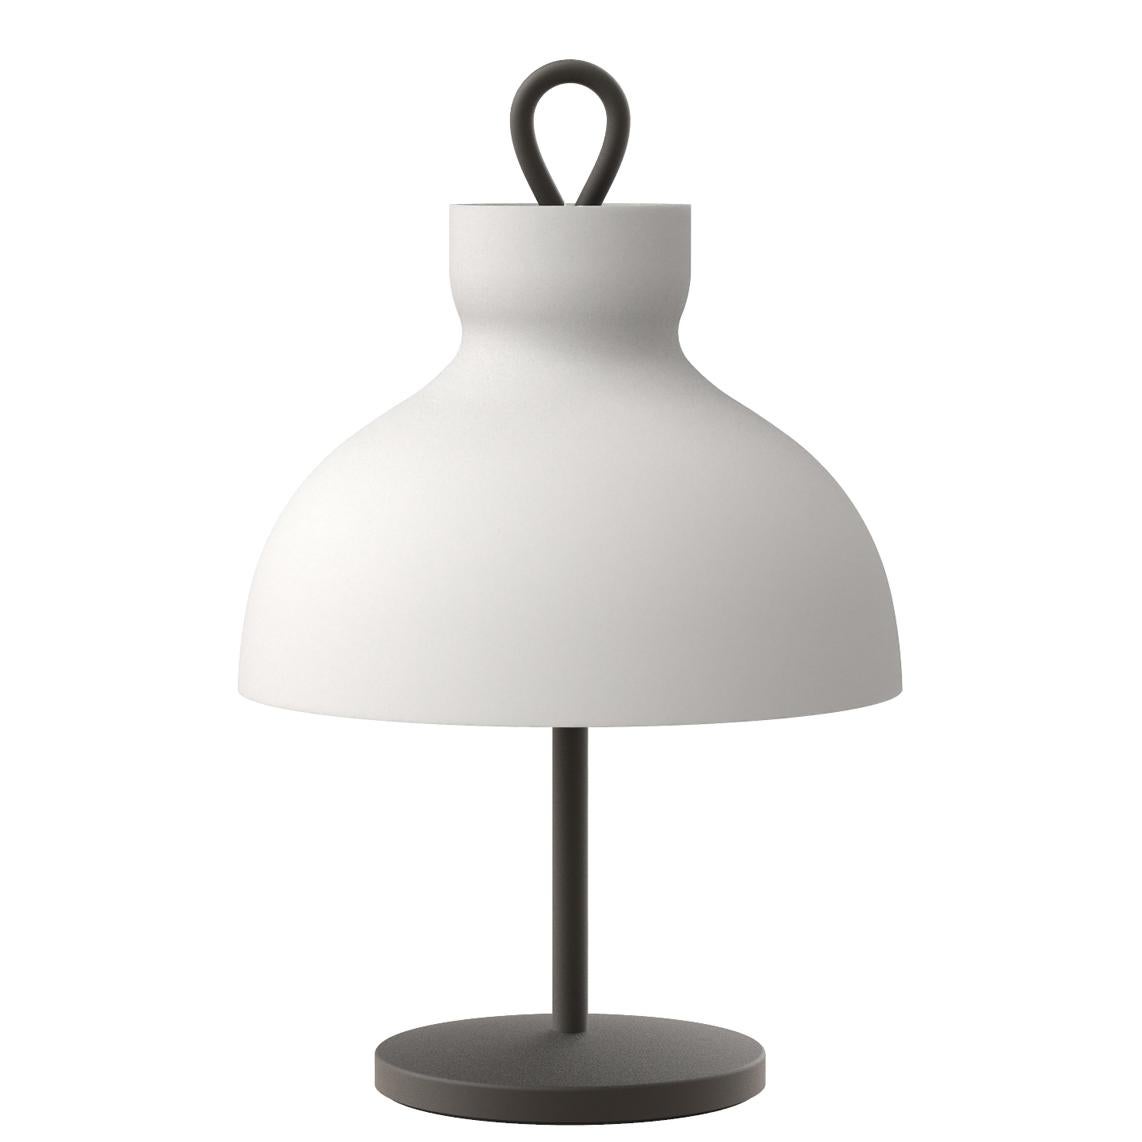 Ignazio Gardella 'Arenzano Bassa' Table Lamp in Brass and Glass For Sale 3